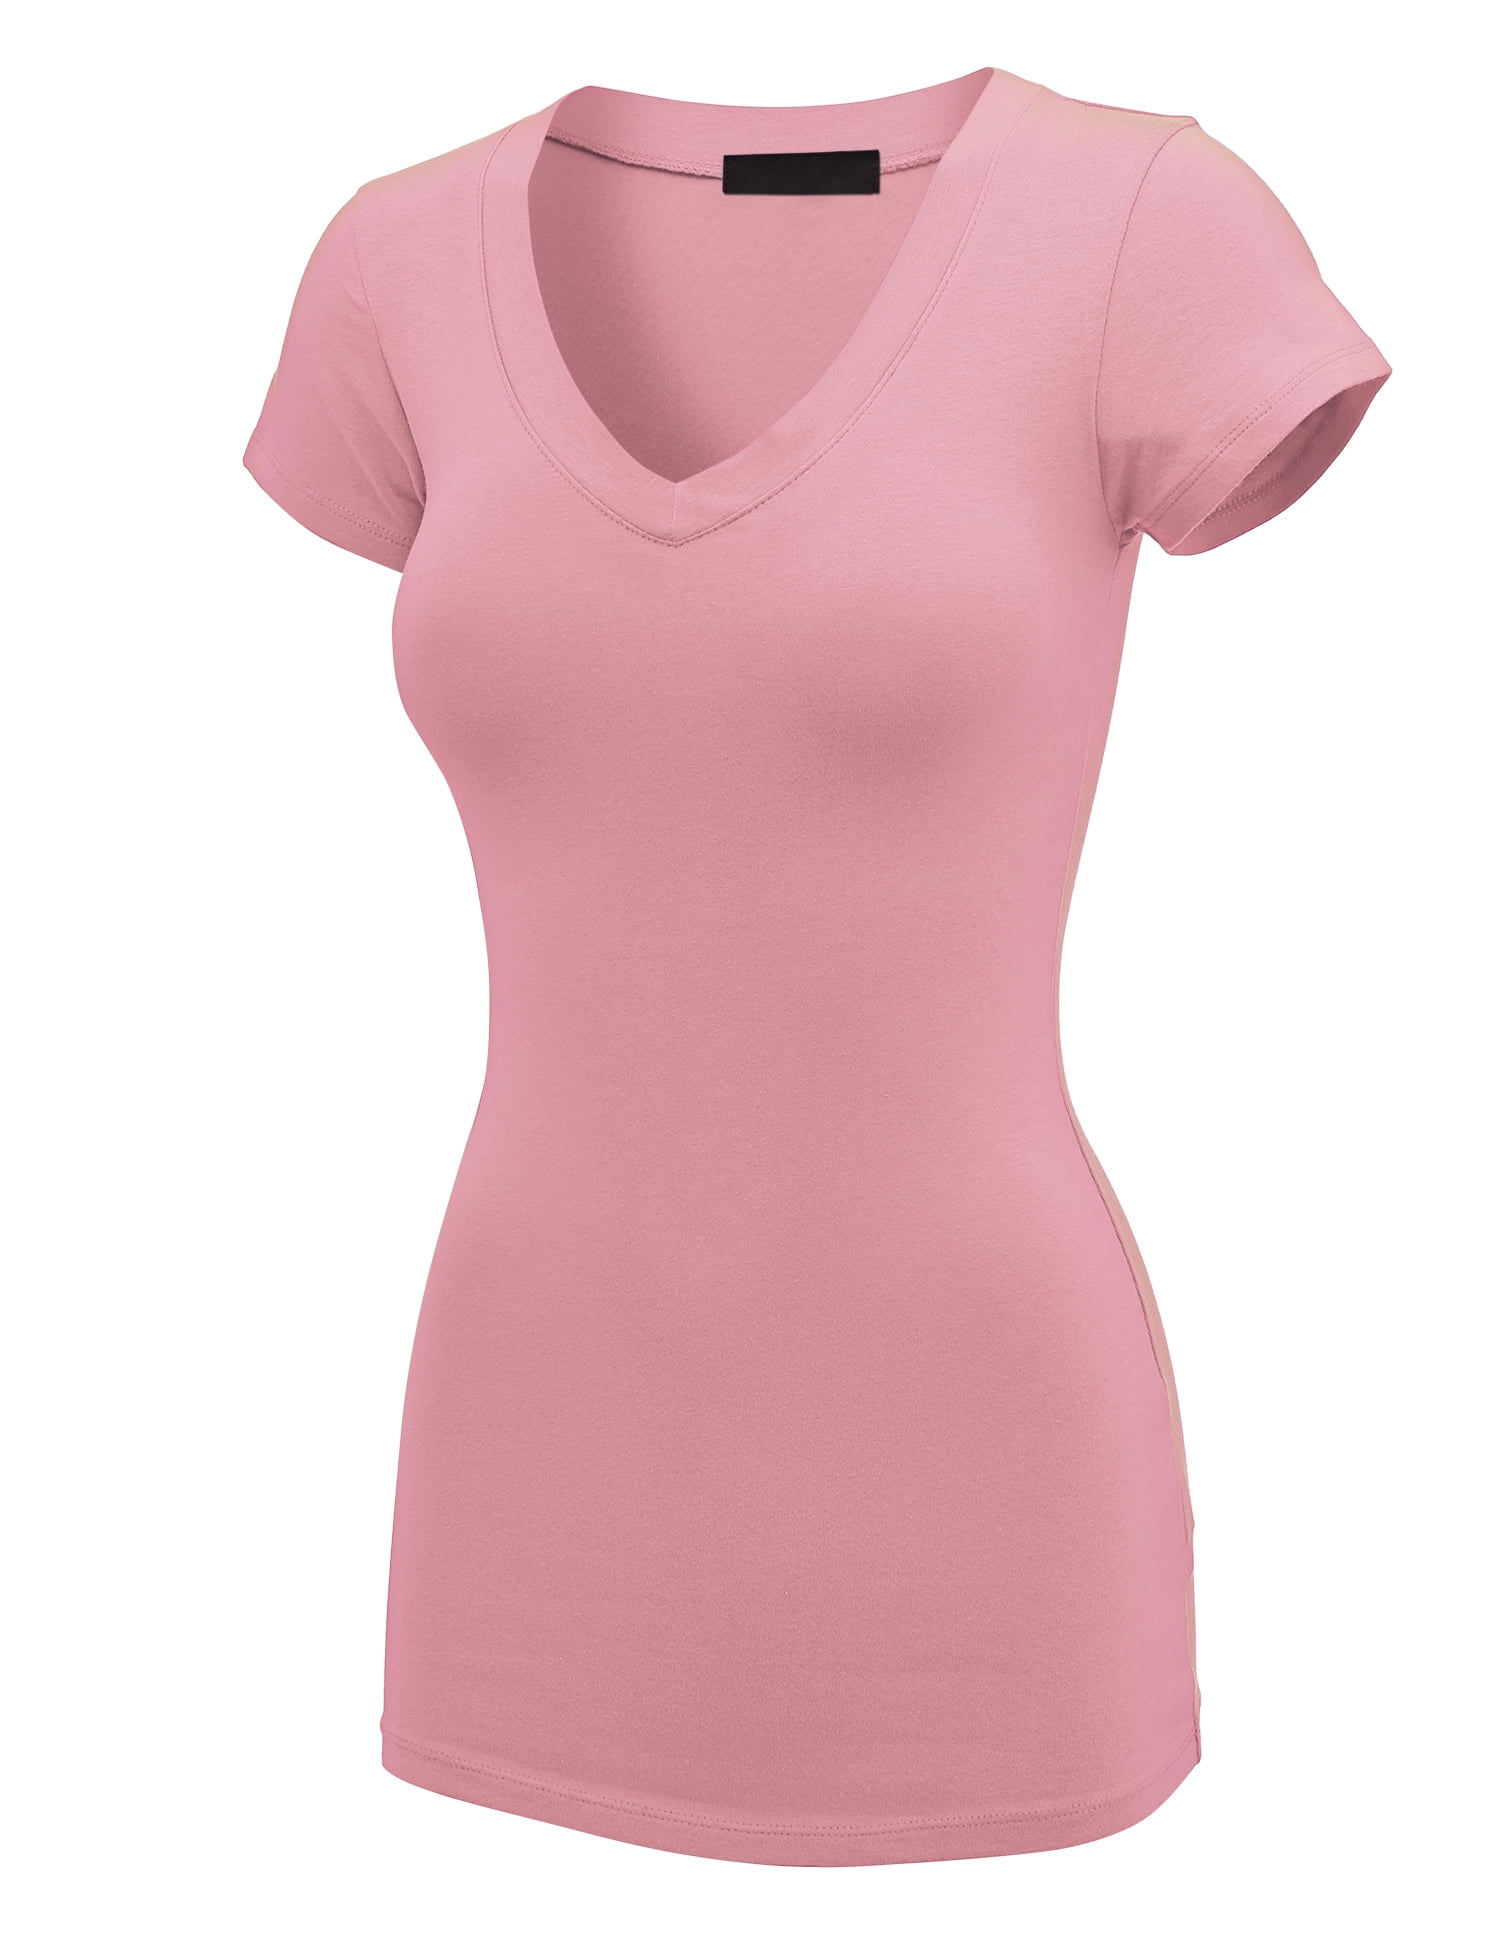 Women's V-Neck Short Sleeve Silhouette T-Shirt (Neon Pink) – Yazbek USA Mint